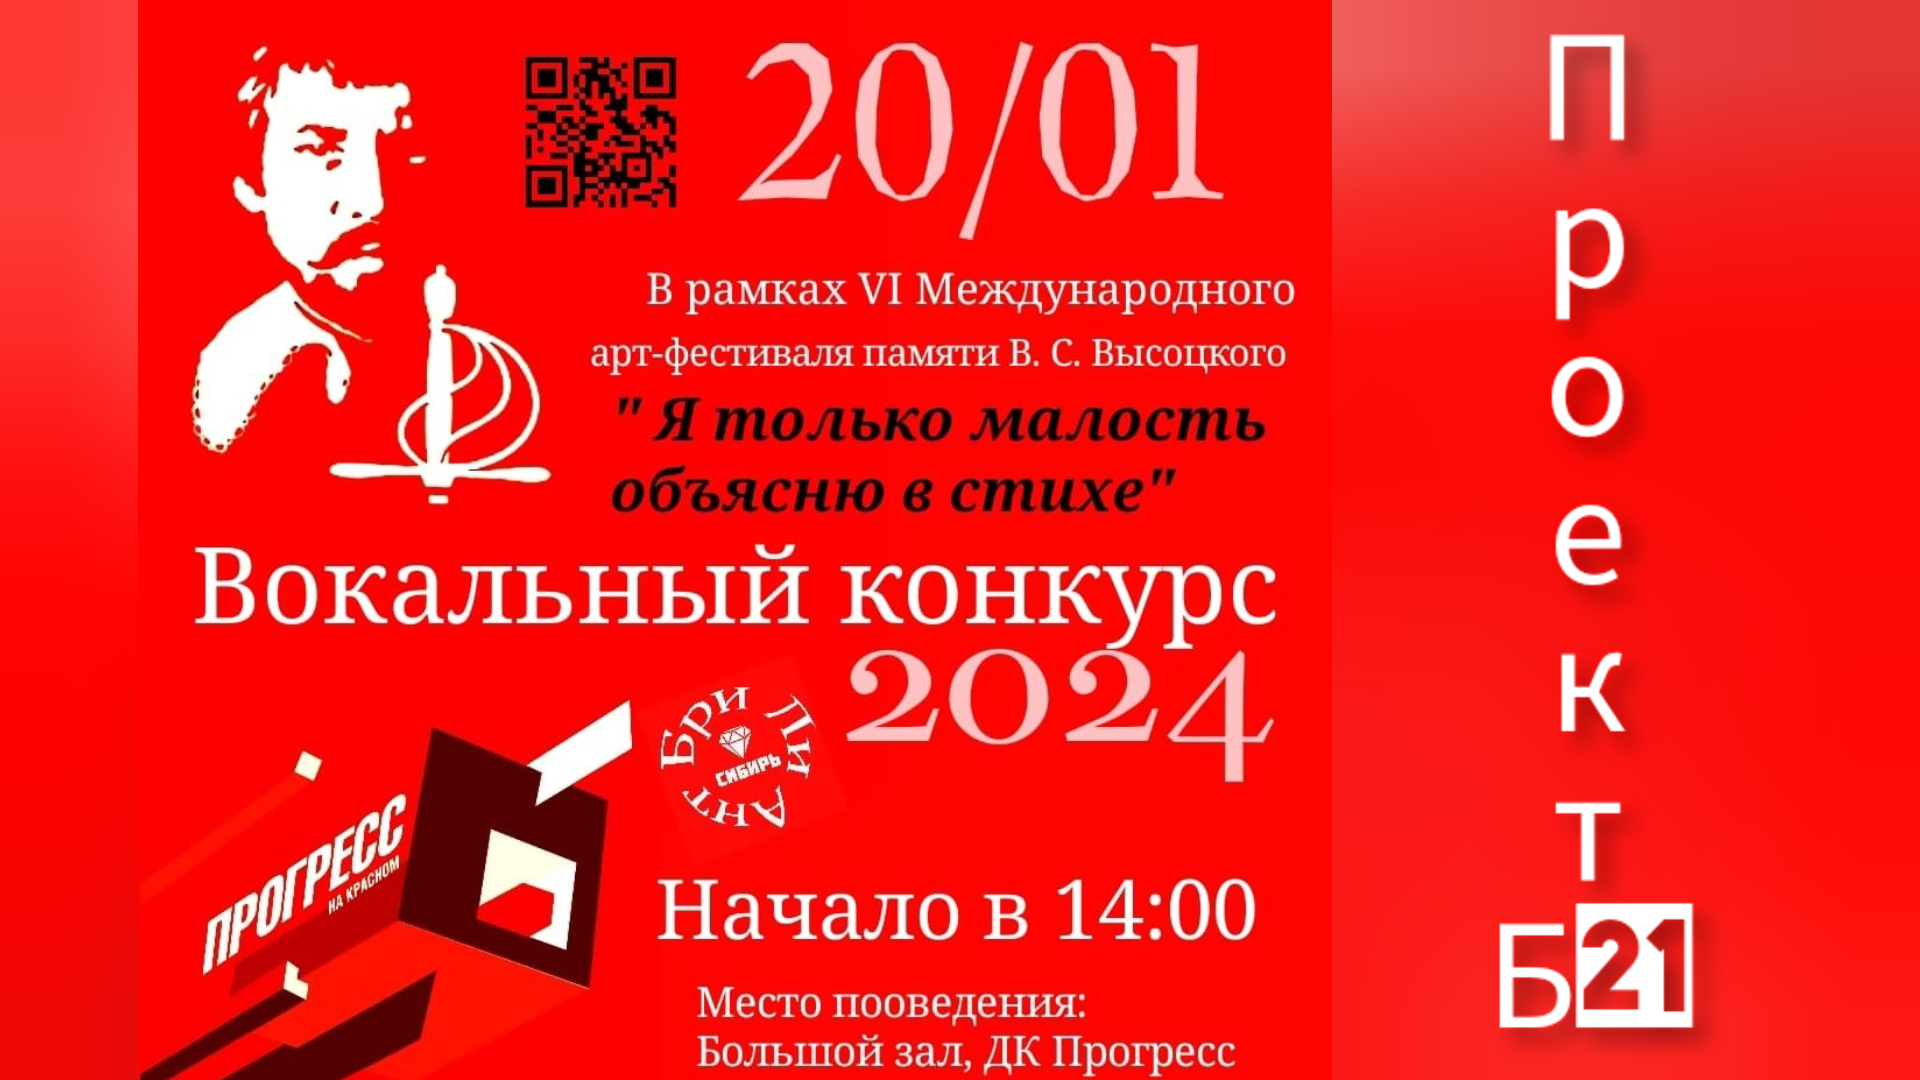 VI арт-фестиваль памяти Высоцкого.Проект Б21, закулисье вокального конкурса. Новосибирск 2024